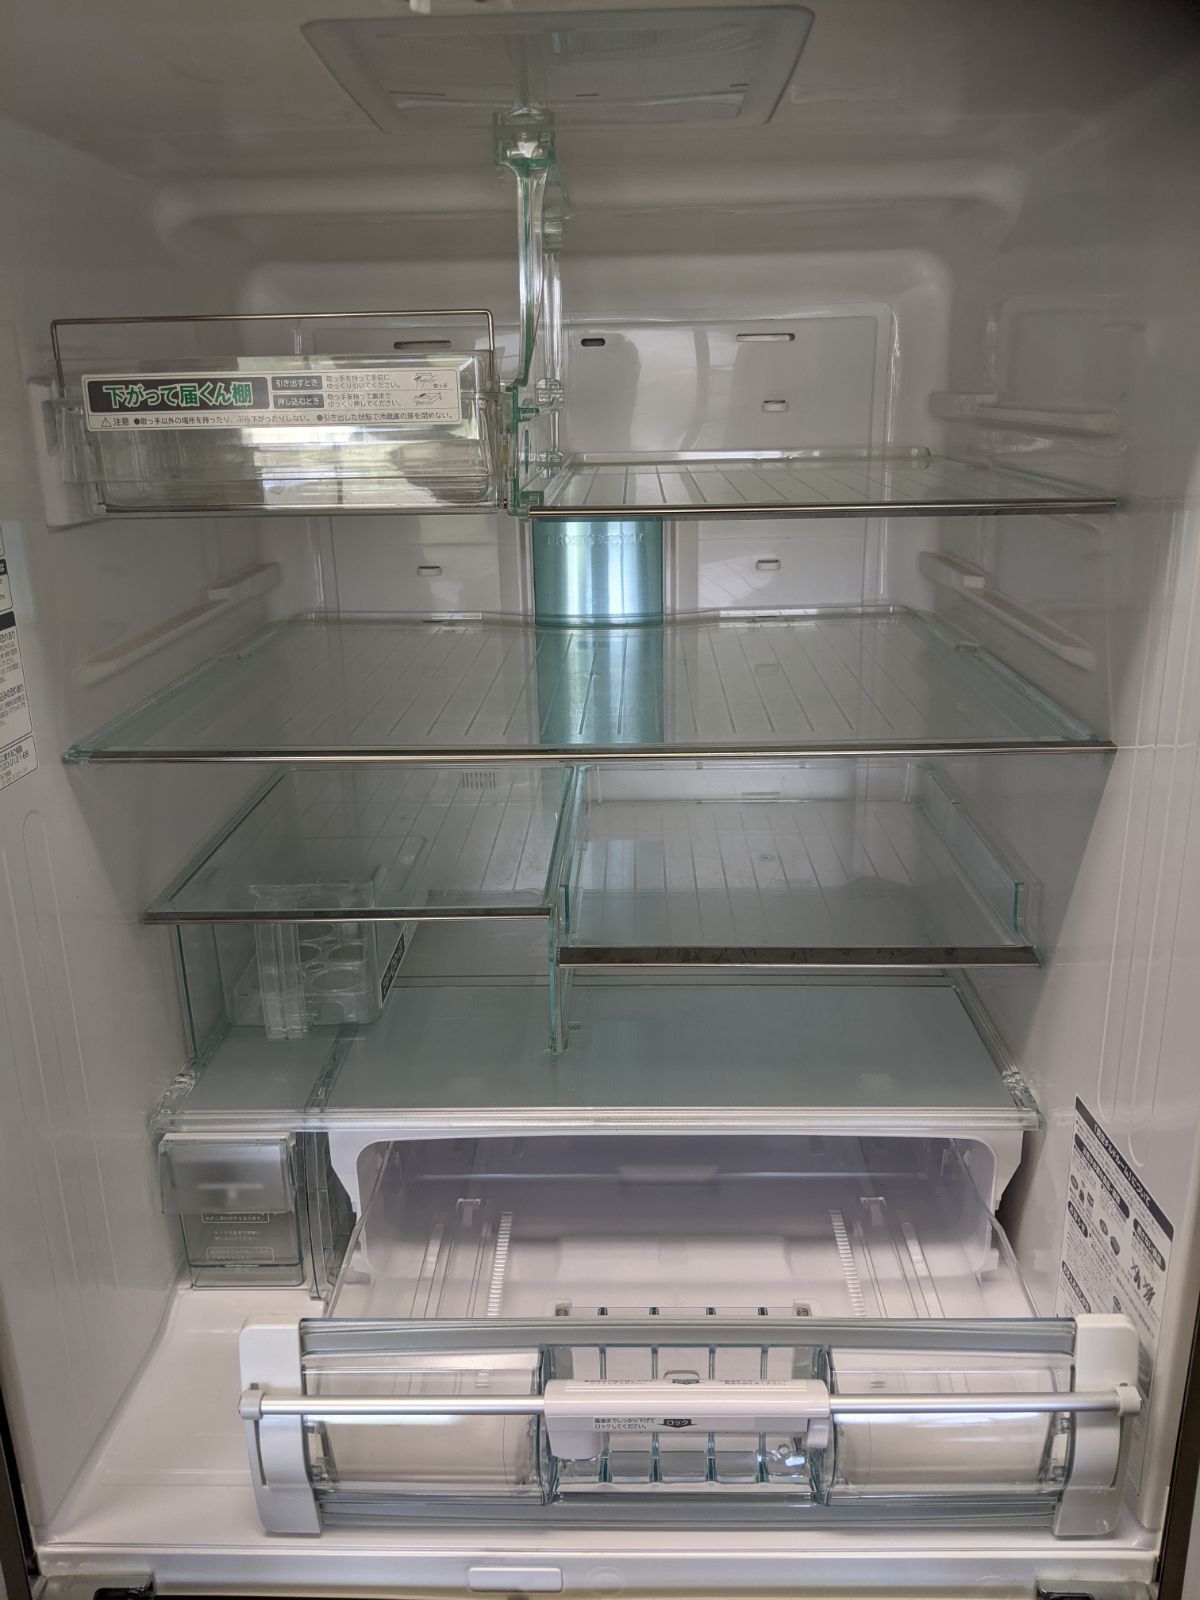 日立ノンフロン冷凍冷蔵庫(6ドア/R-A5700-1 XT型/2011年製) - 住まいの